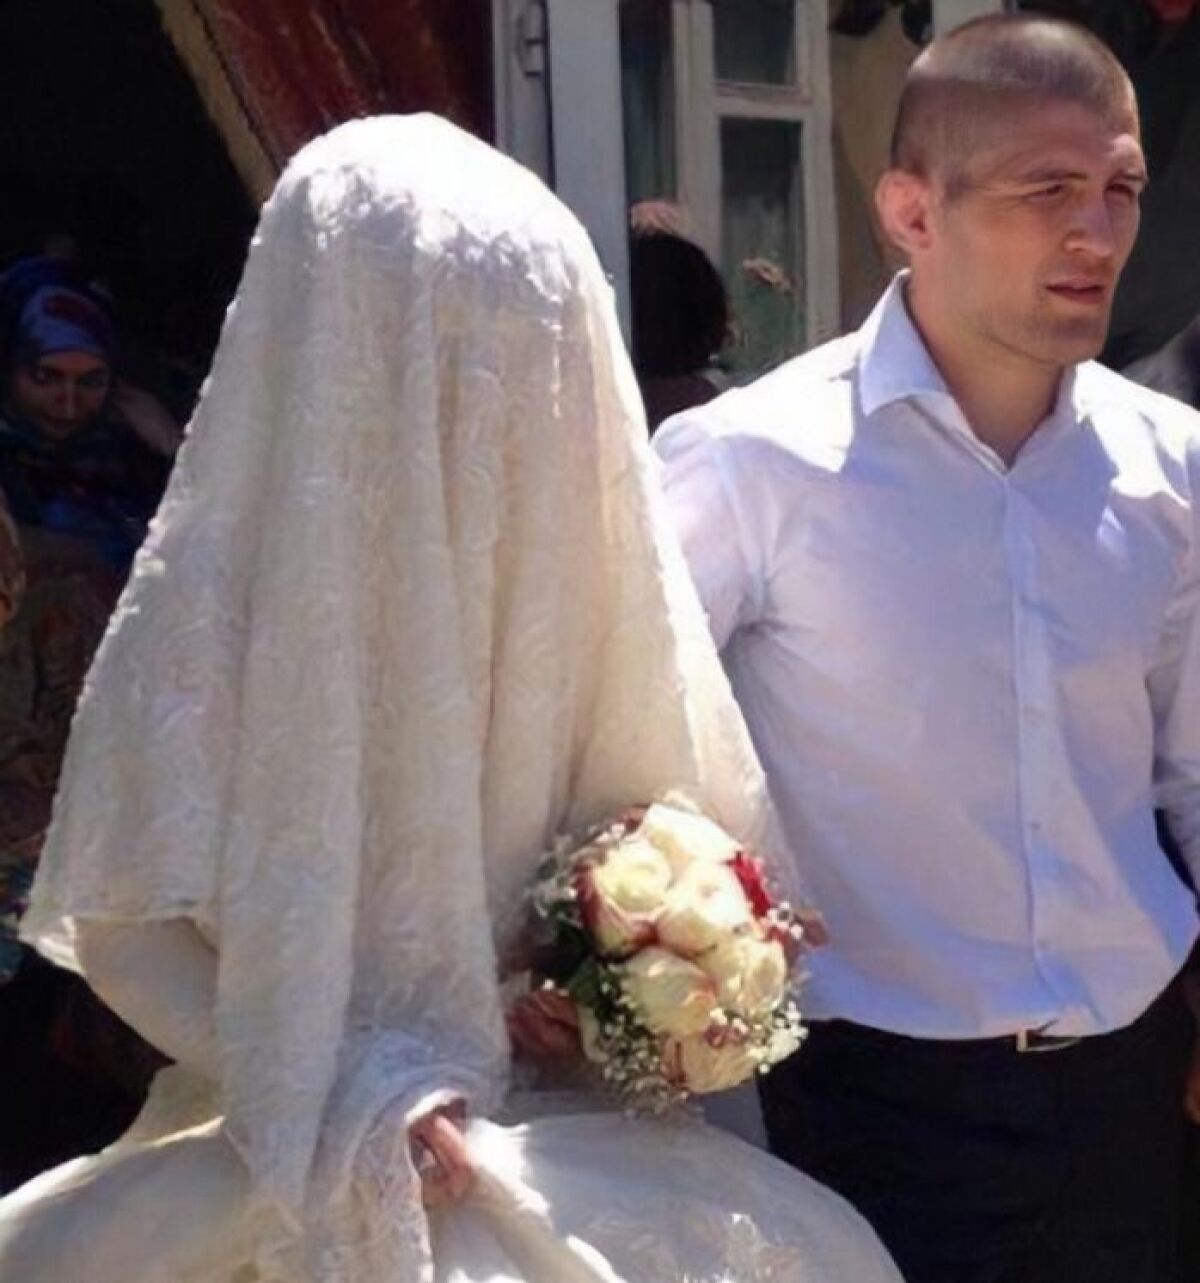 Хабиб нурмагомедов свадьба фото